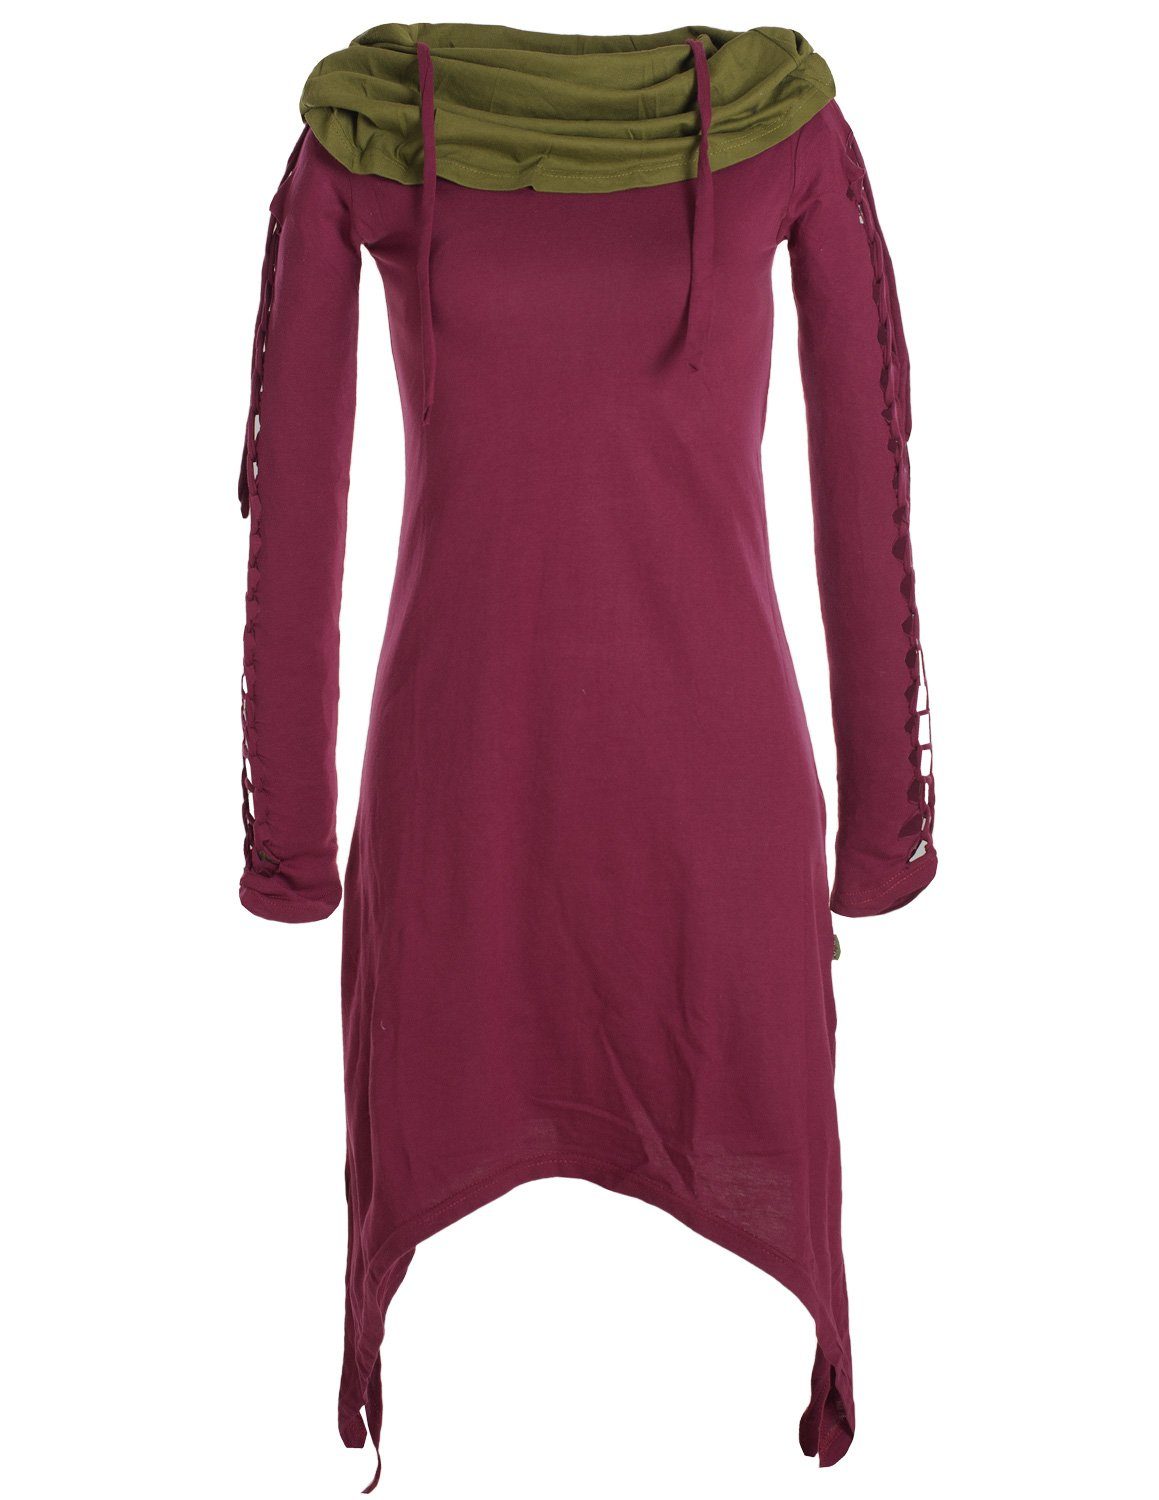 Vishes Zipfelkleid Zweifarbiges langarm Kleid aus Biobaumwolle mit Schalkragen Ethne, Goa, Boho, Elfen Style dunkelrot